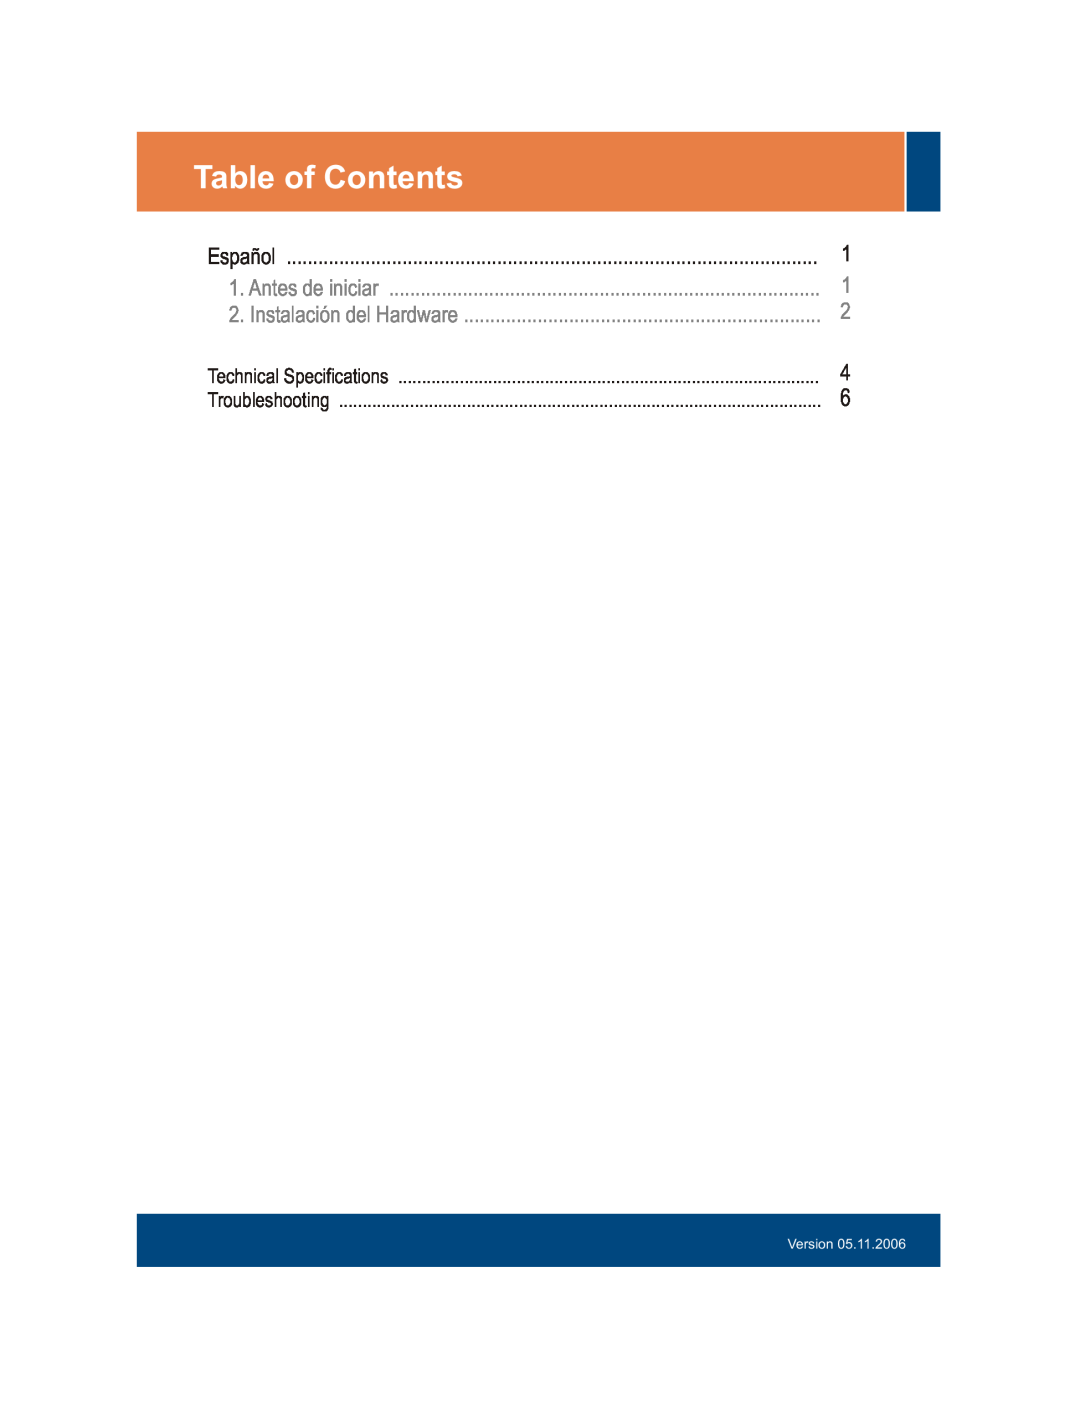 TRENDnet TEG-S240TX manual Table of Contents, Antes de iniciar, Instalación del Hardware, Technical Specifications, Version 